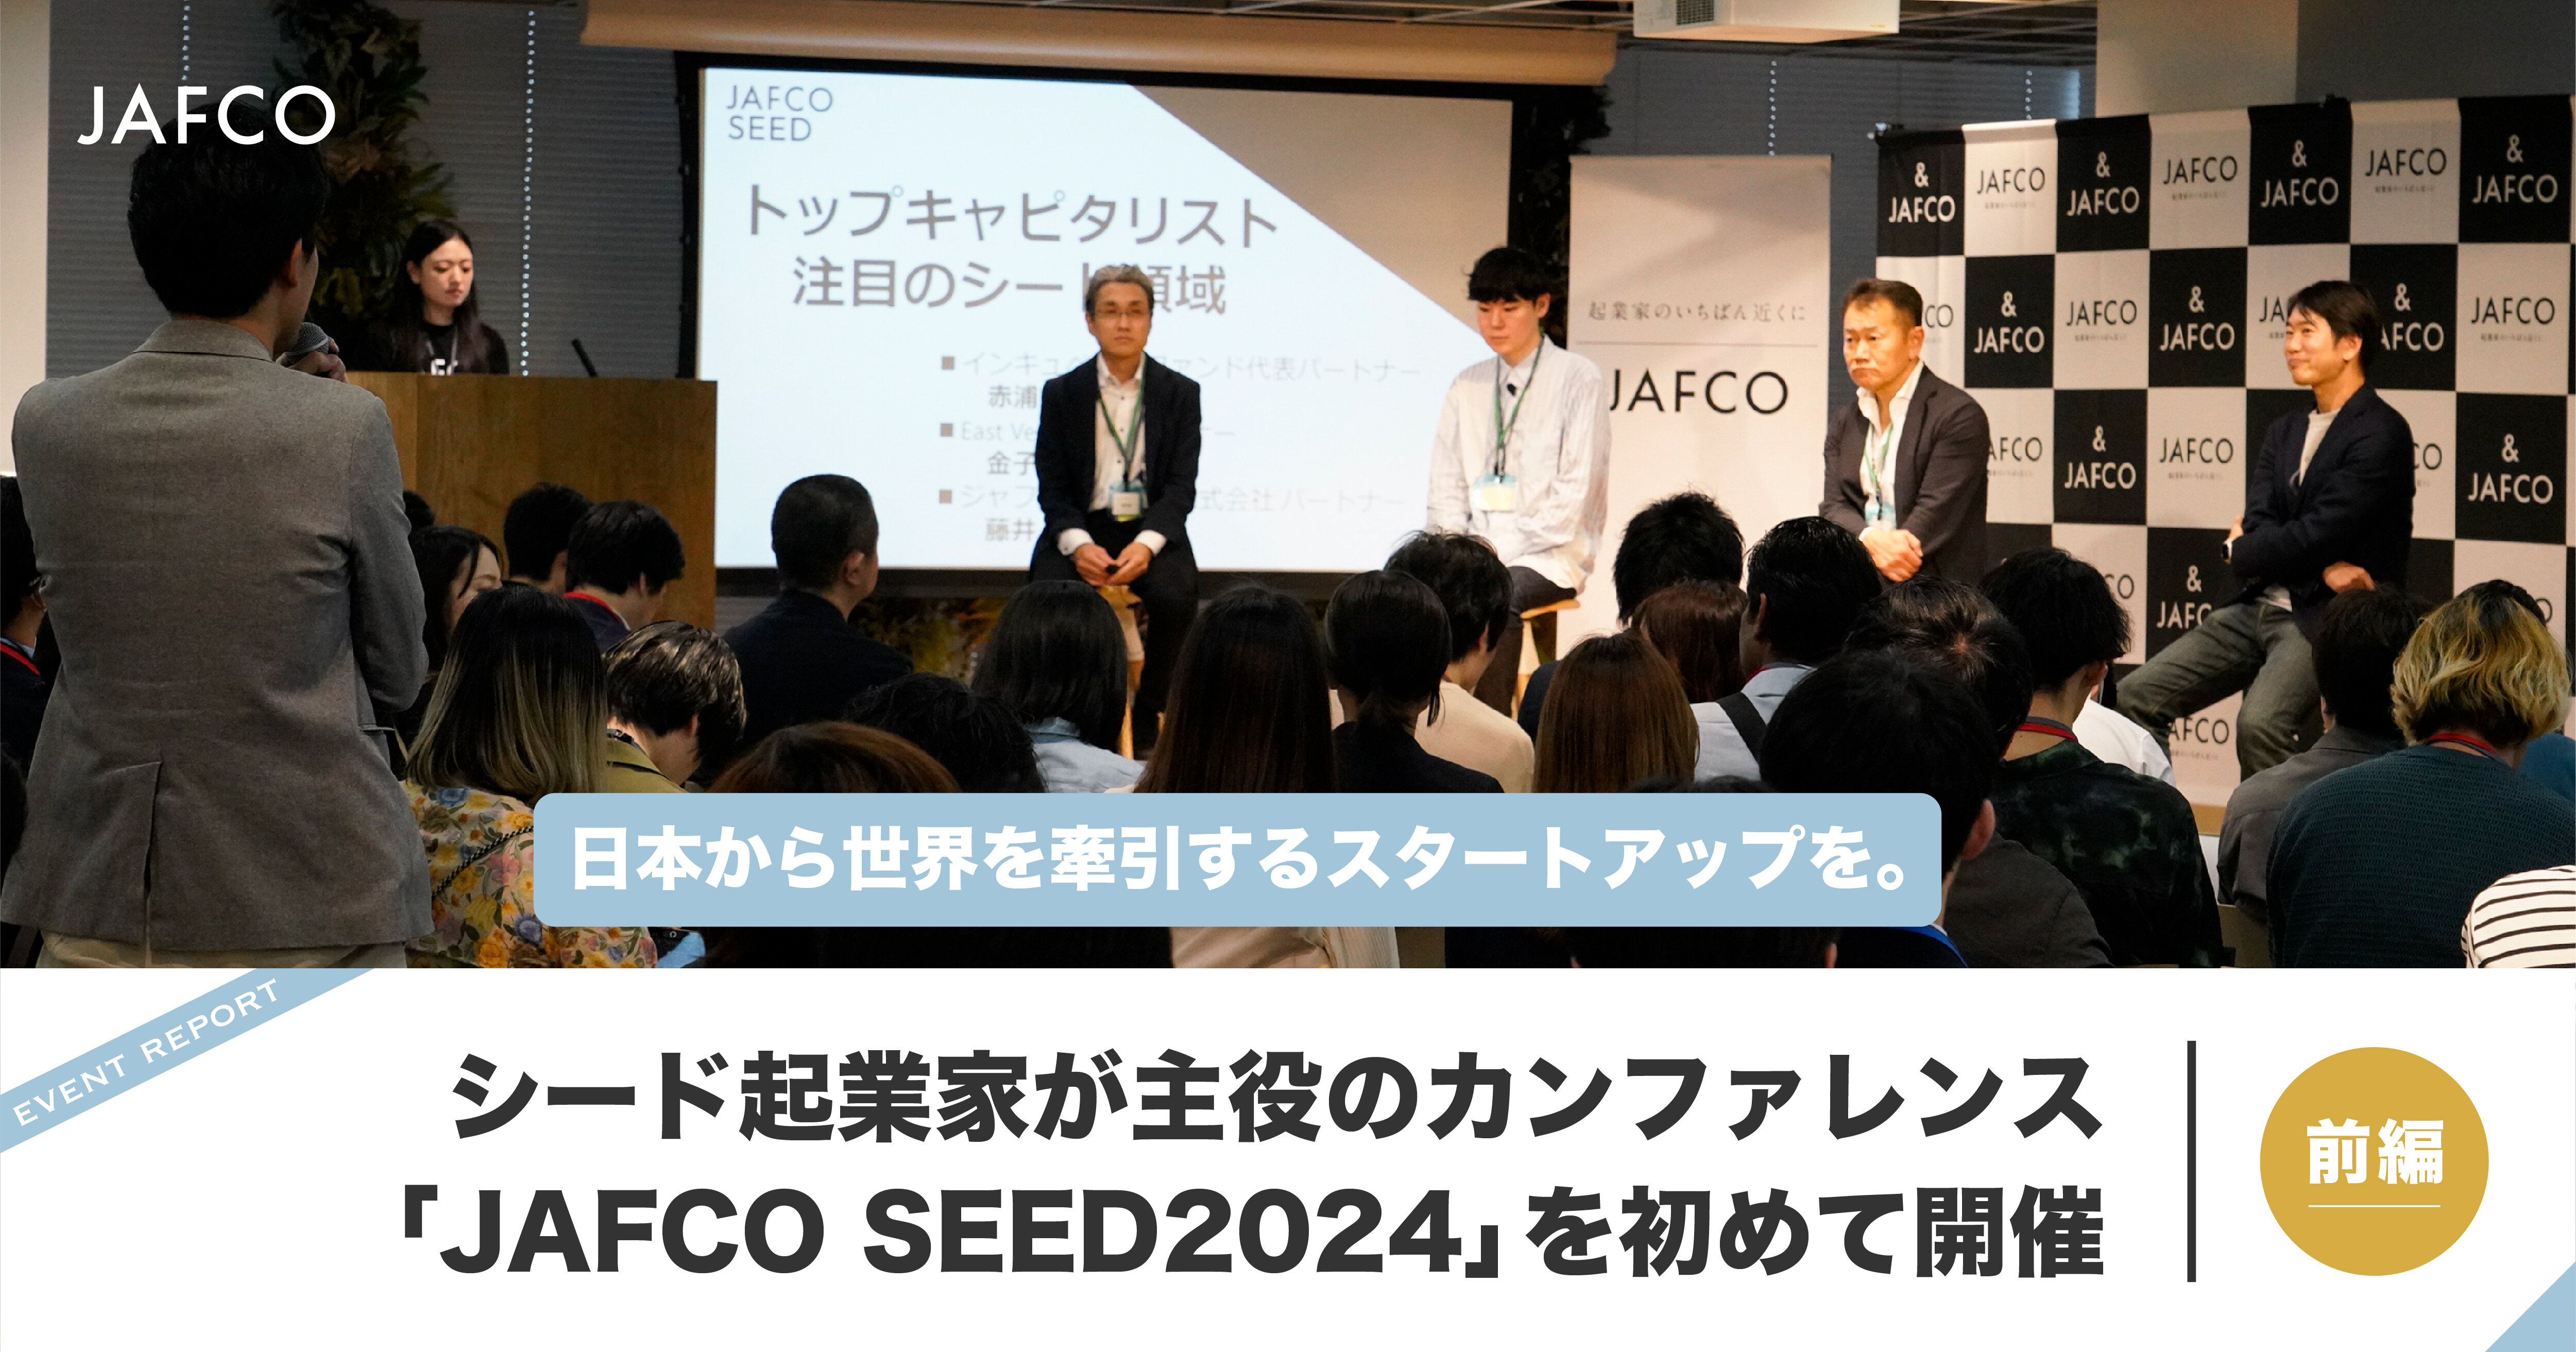 日本から世界を牽引するスタートアップを。シード起業家が主役のカンファレンス「JAFCO SEED2024」を初めて開催（前編）